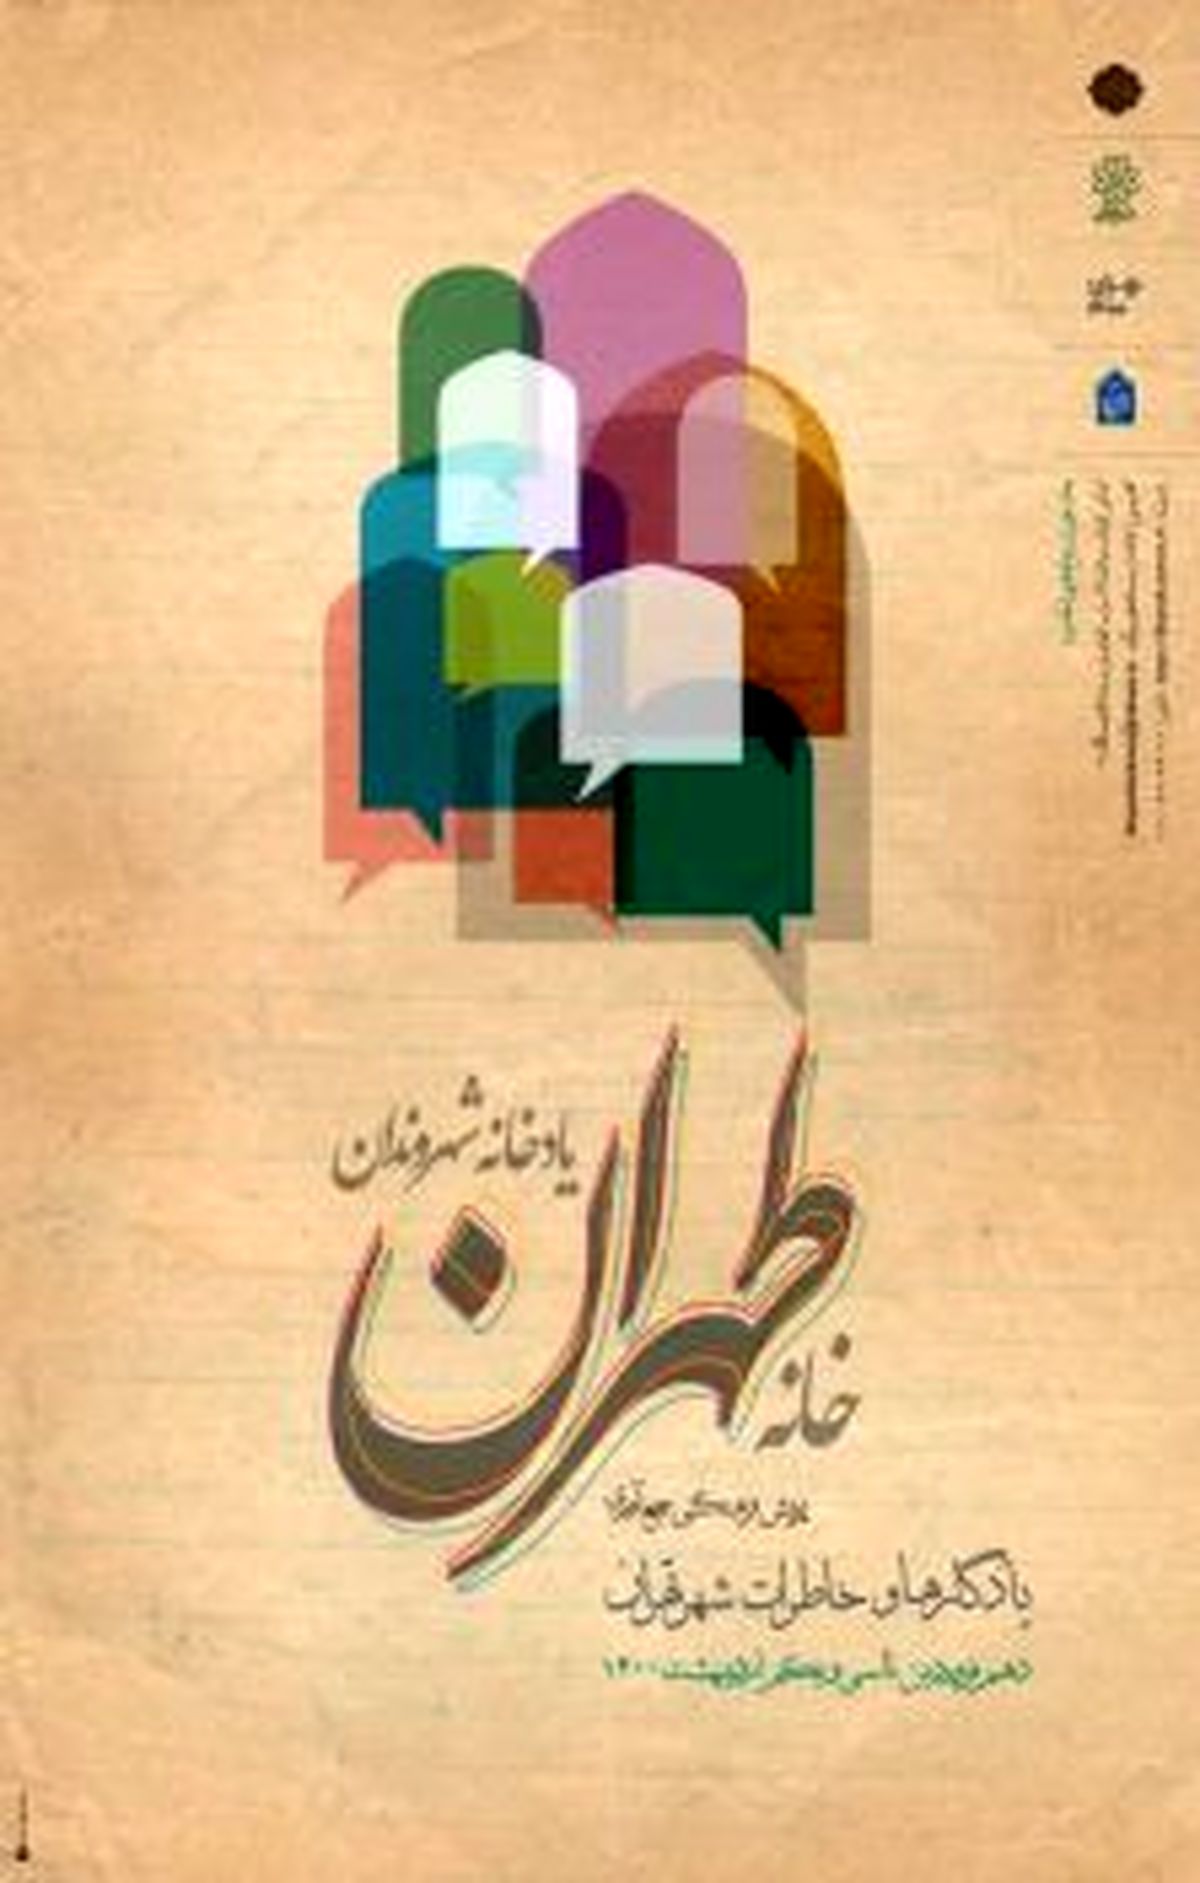 پویش فرهنگی جمع آوری یادگارها و خاطرات تهران برگزار می شود.